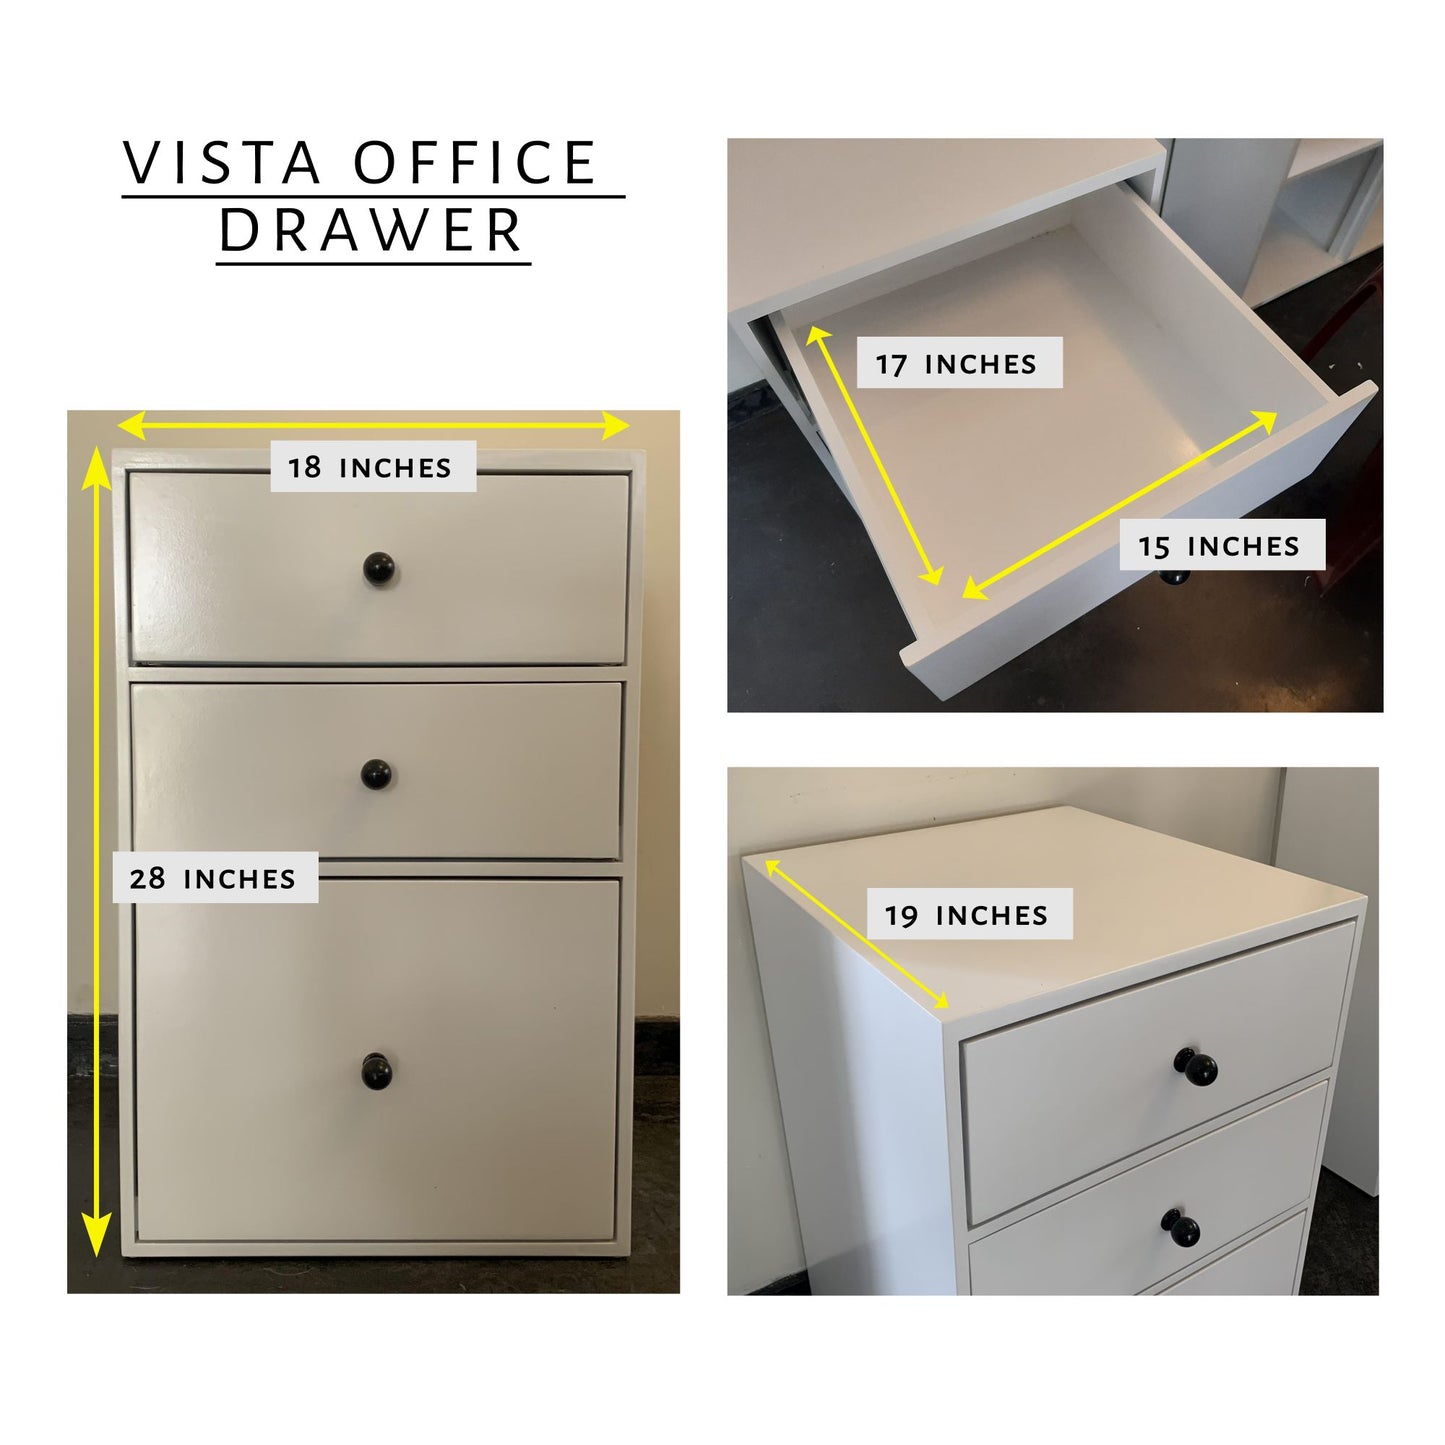 Vista Office Drawer